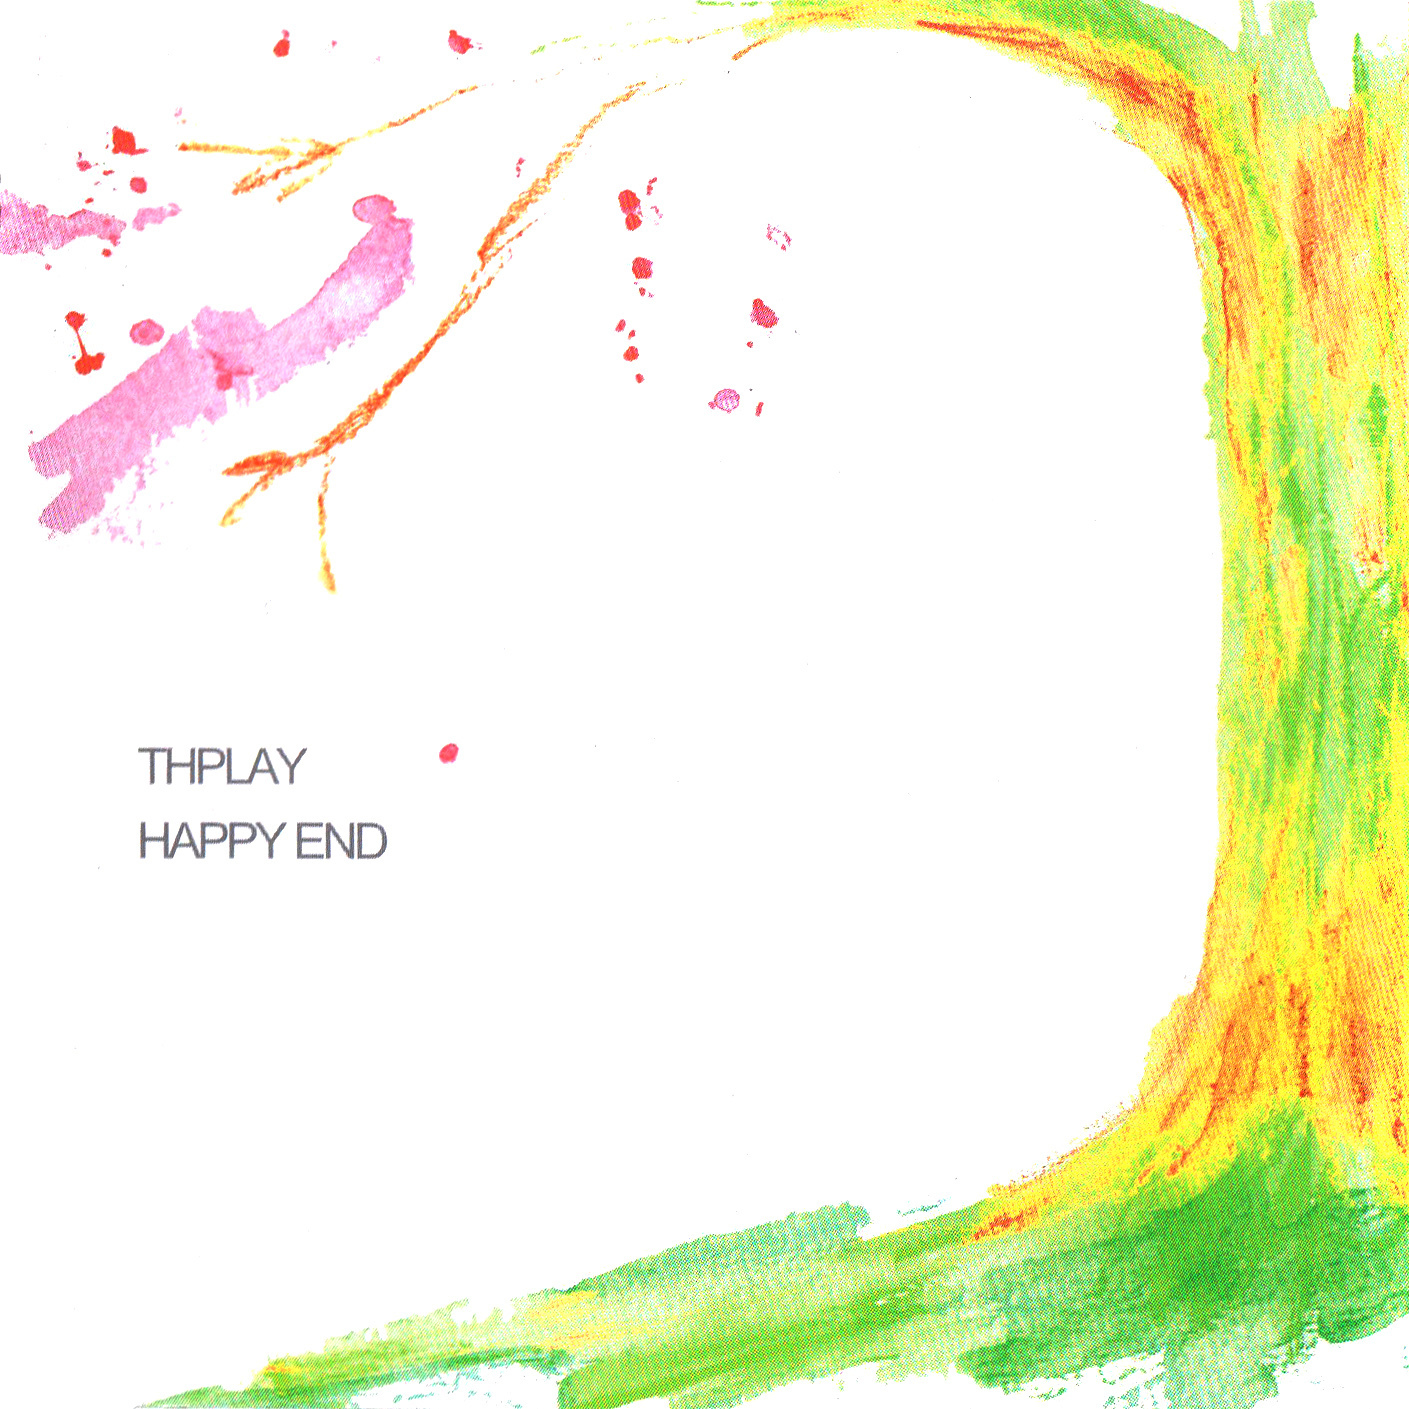 THPLAY (スプレイ) ミニアルバム『HAPPY END』(2005年3月3日発売) 高画質 CDジャケット画像